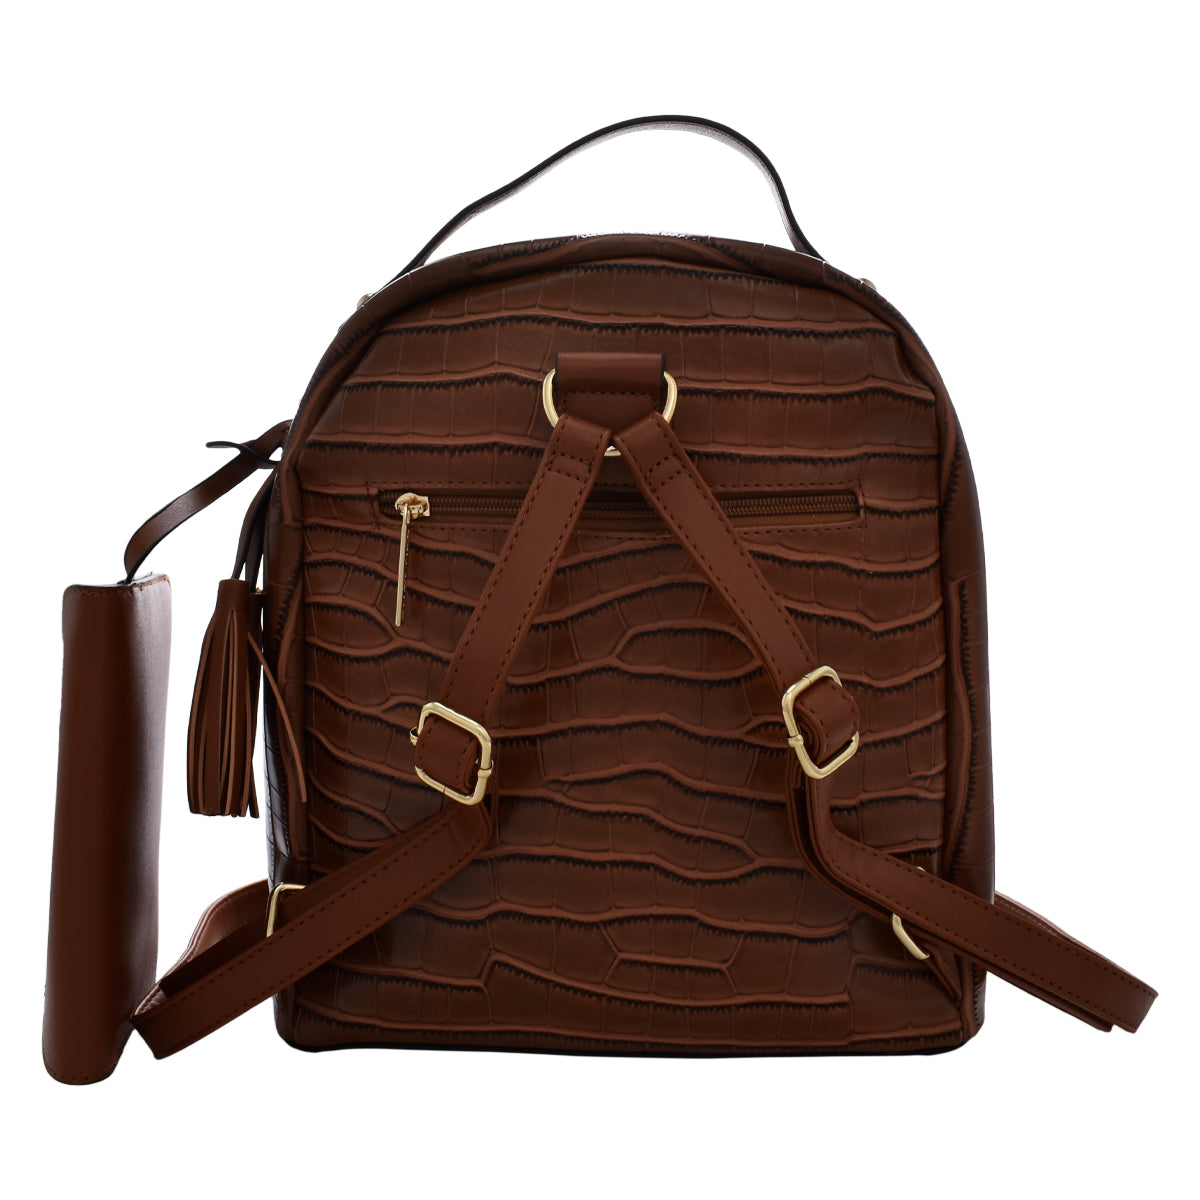 Backpack [Chatties] con diseño estilo animal print tipo piel de cocodrilo color camel